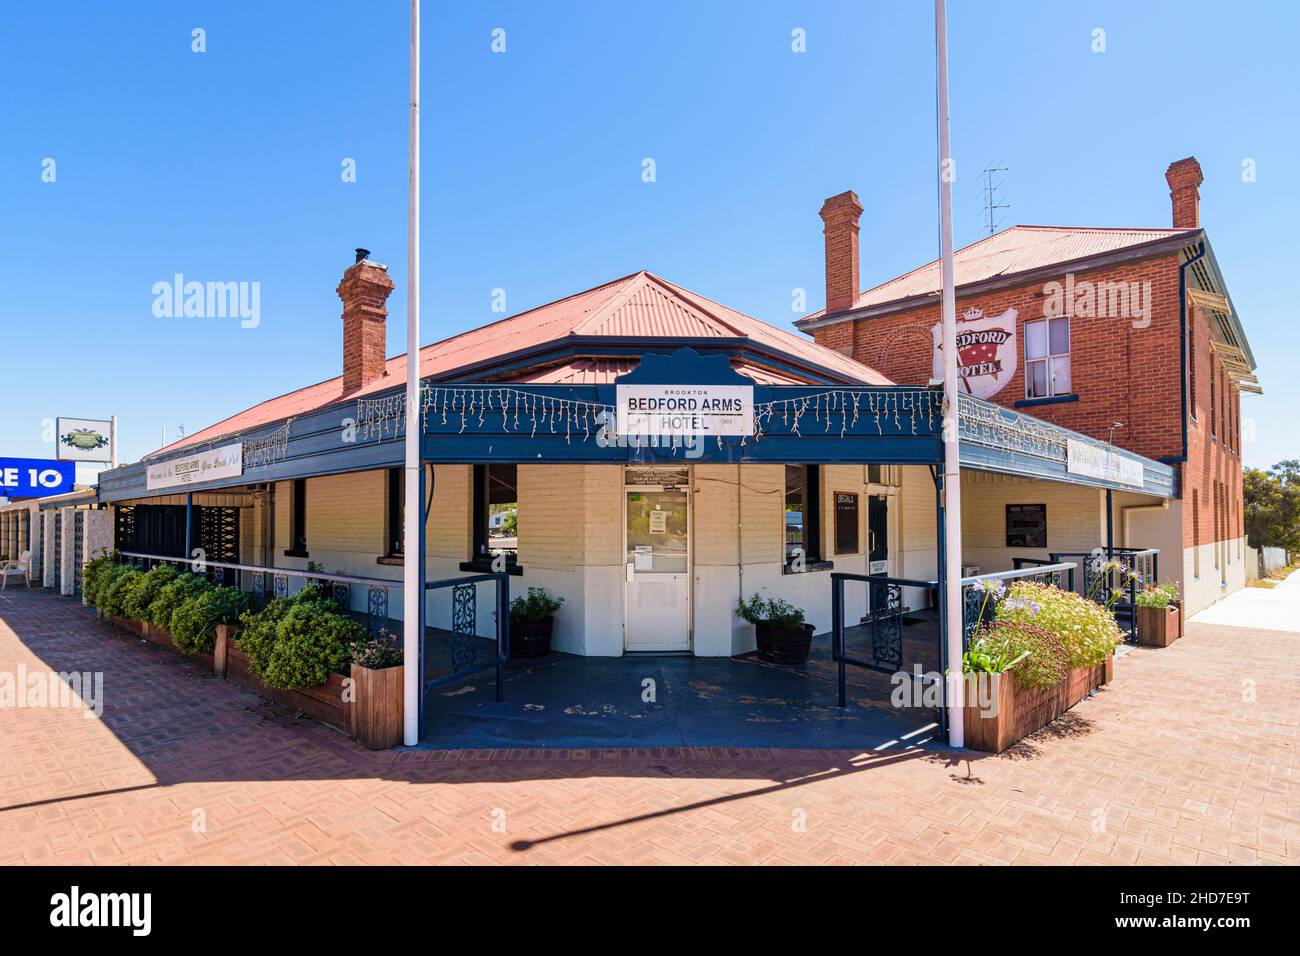 L'hôtel Bedford Arms, construit en 1903 dans la ville de la région de Wheatbelt, Brookton, Australie occidentale, Australie Banque D'Images